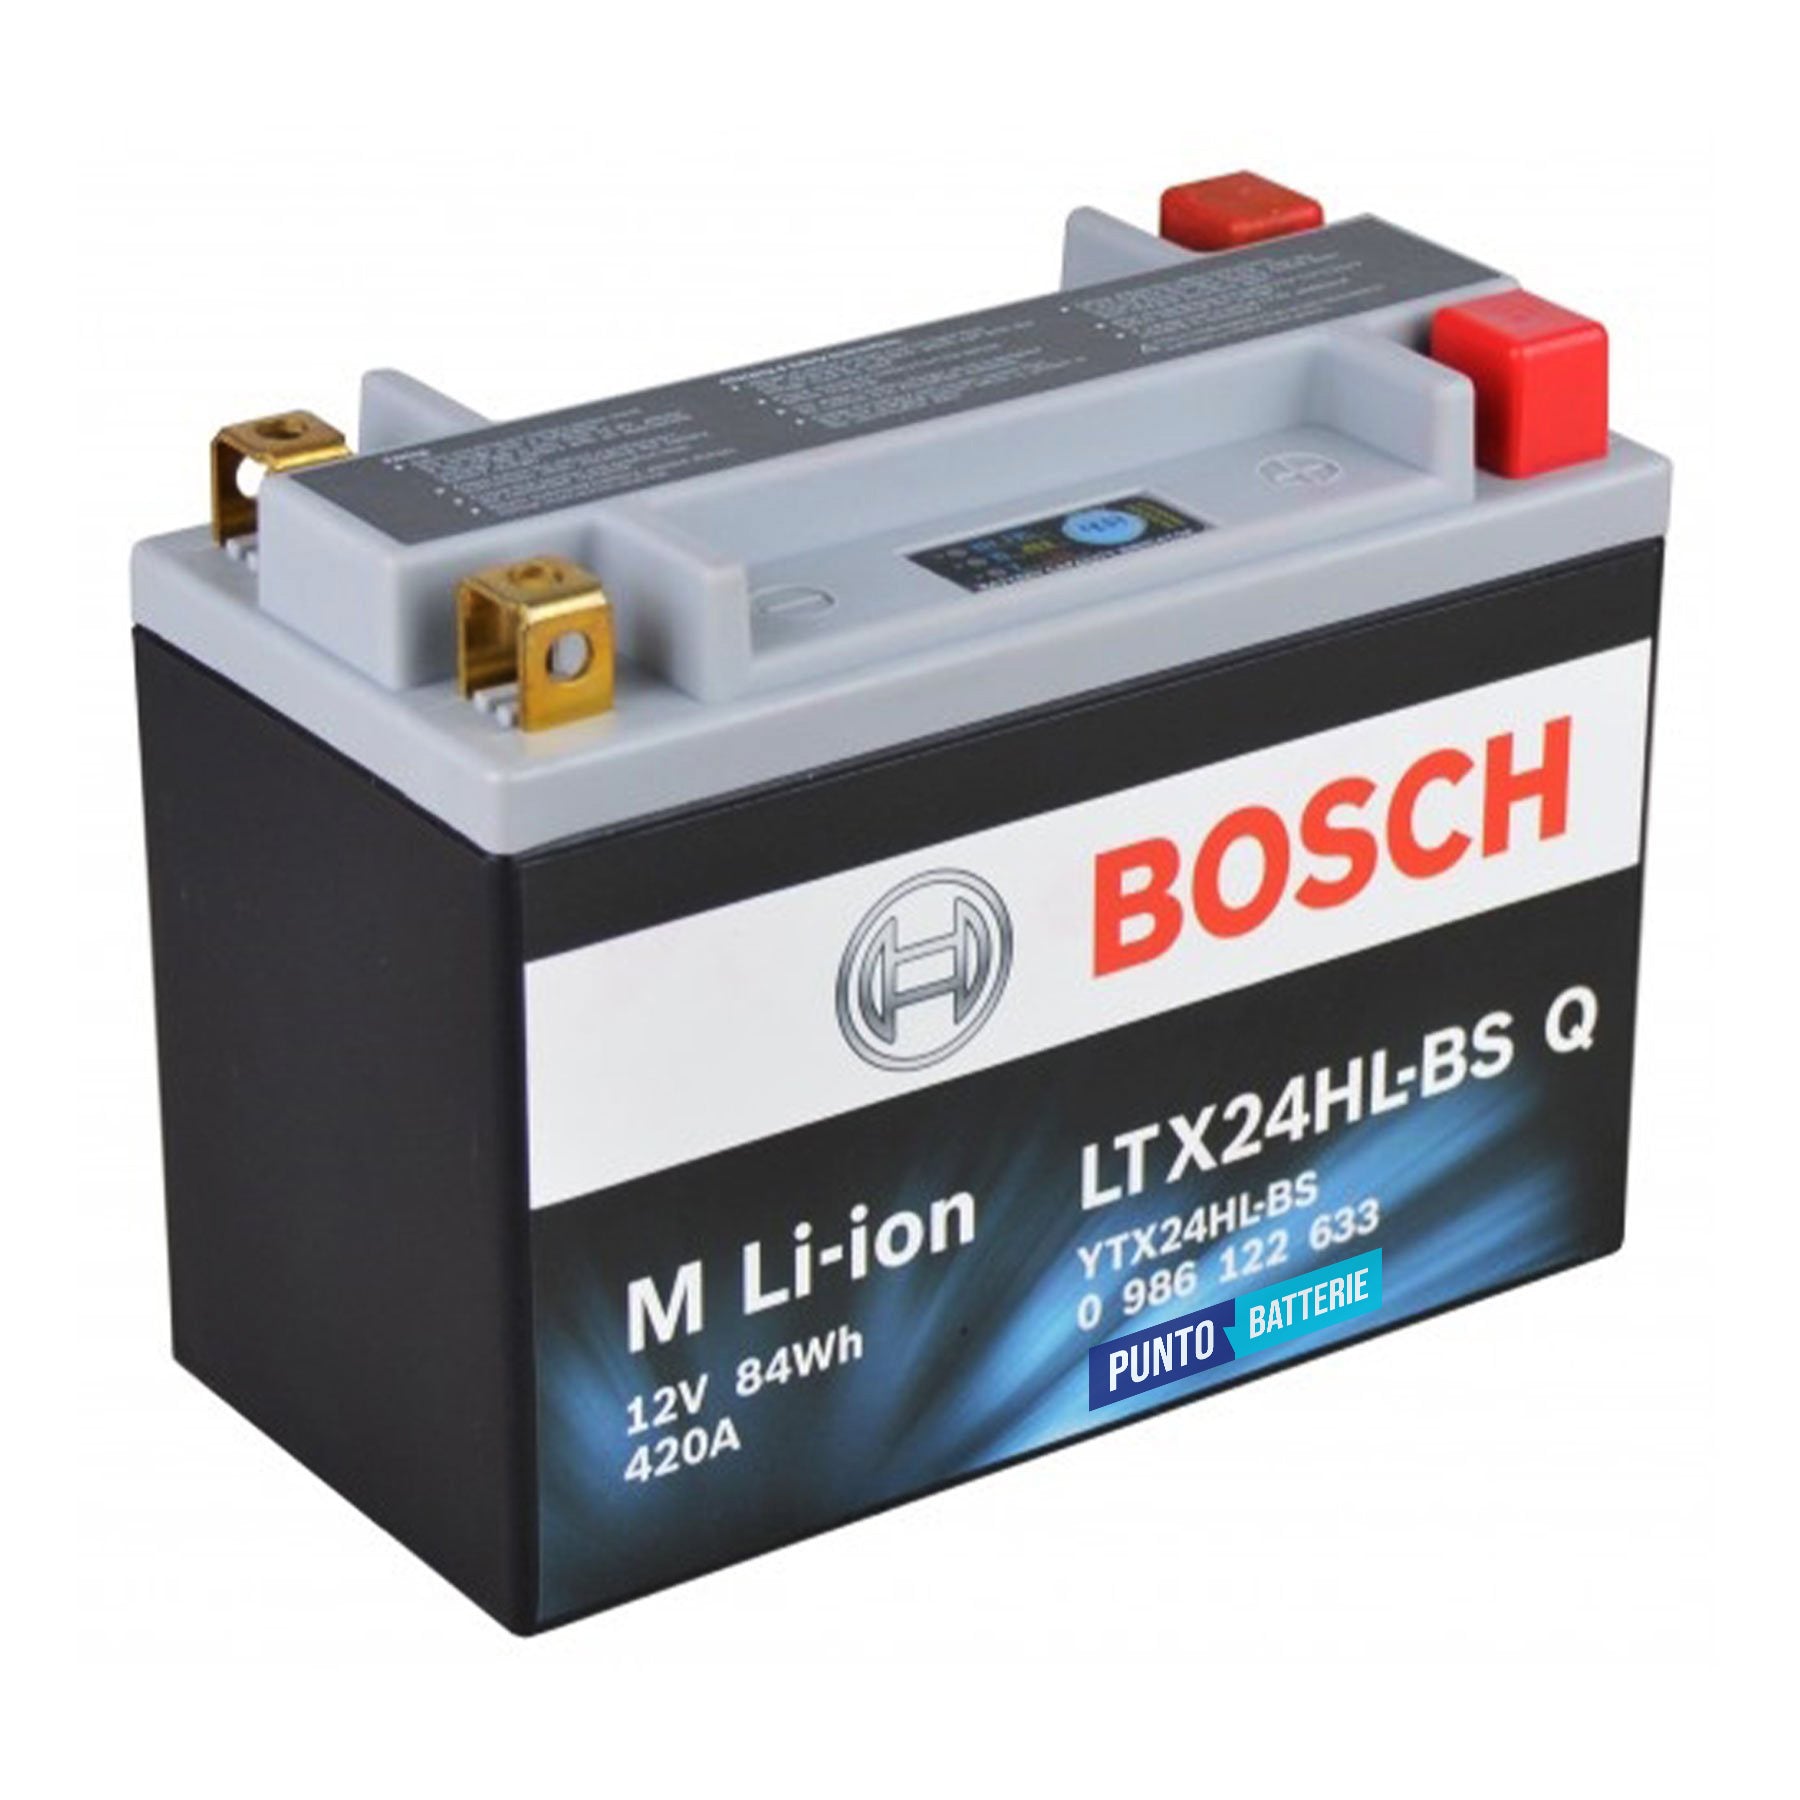 Batteria originale Bosch M Li-ion LTX24HL-BS, dimensioni 175 x 87 x 155, polo positivo a destra e sinistra, 12 volt, 7 amperora, 420 ampere. Batteria per moto, scooter e powersport.